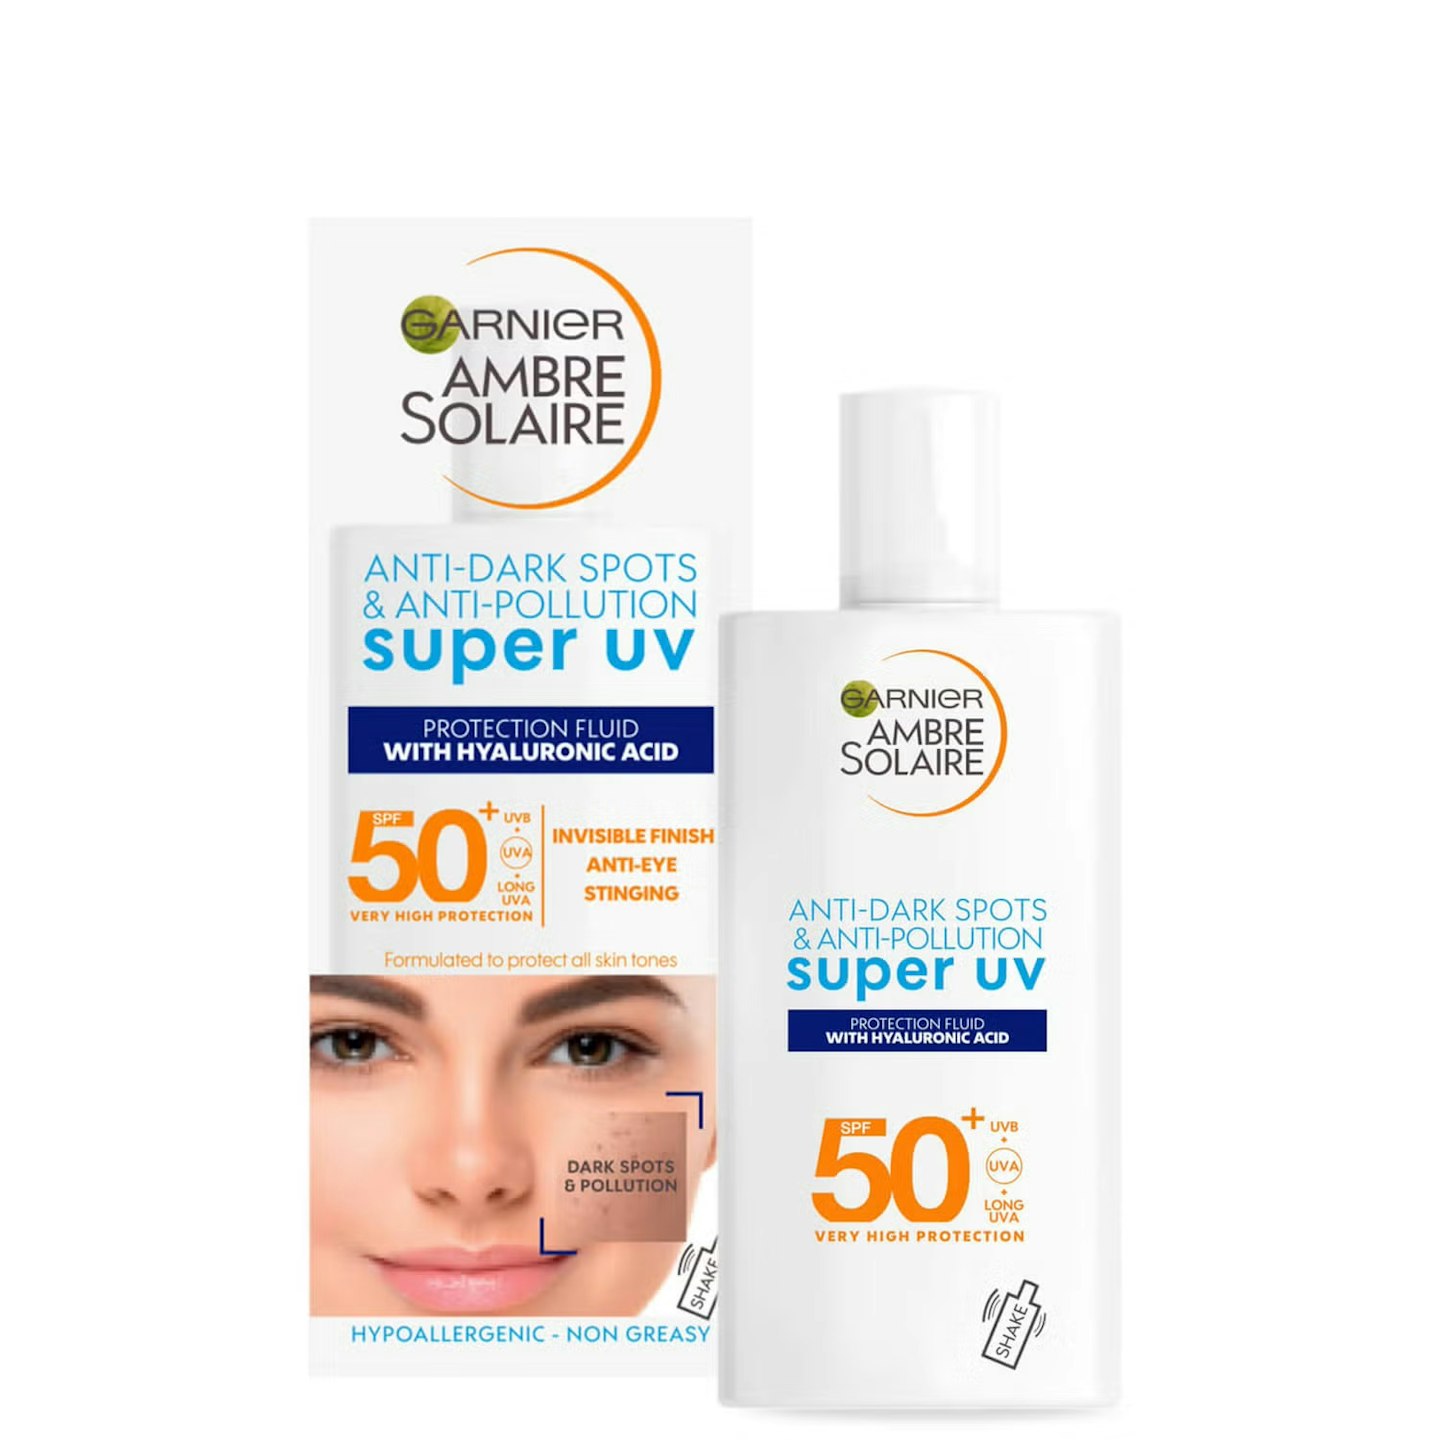 Garnier Ambre Solaire Super UV Anti Dark Spots & Anti Pollution Face Fluid SPF50